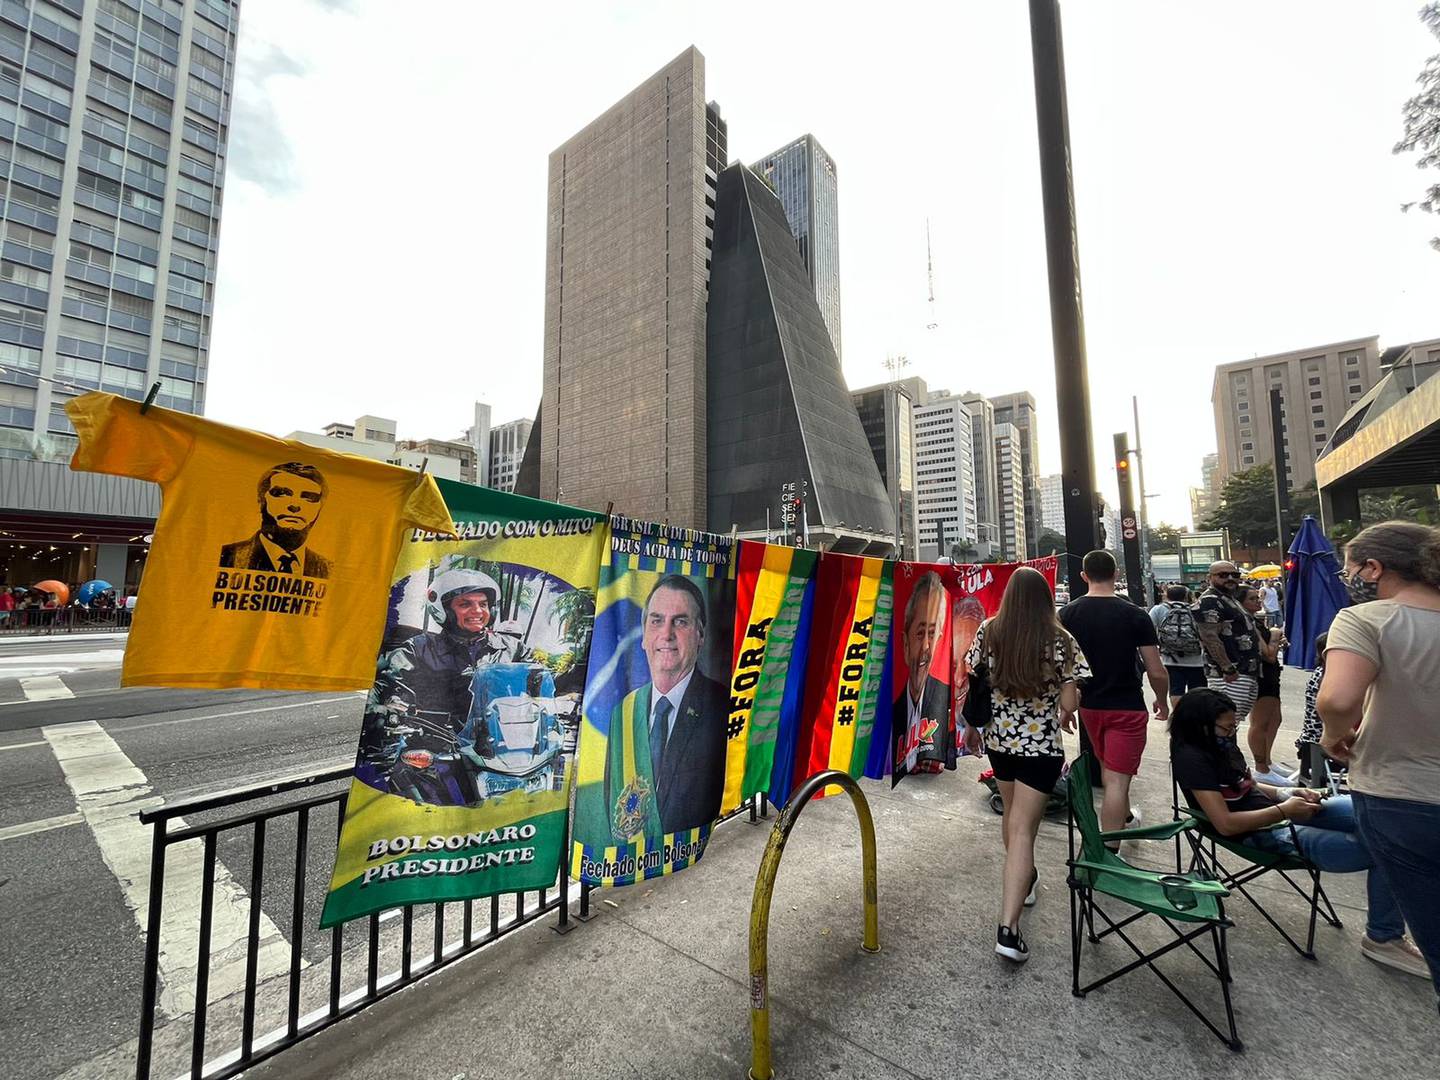 Toallas y camisetas alusivos a los principales candidatos rumbo a la elección presidencial en Brasil en las calles de Sao Paulo.